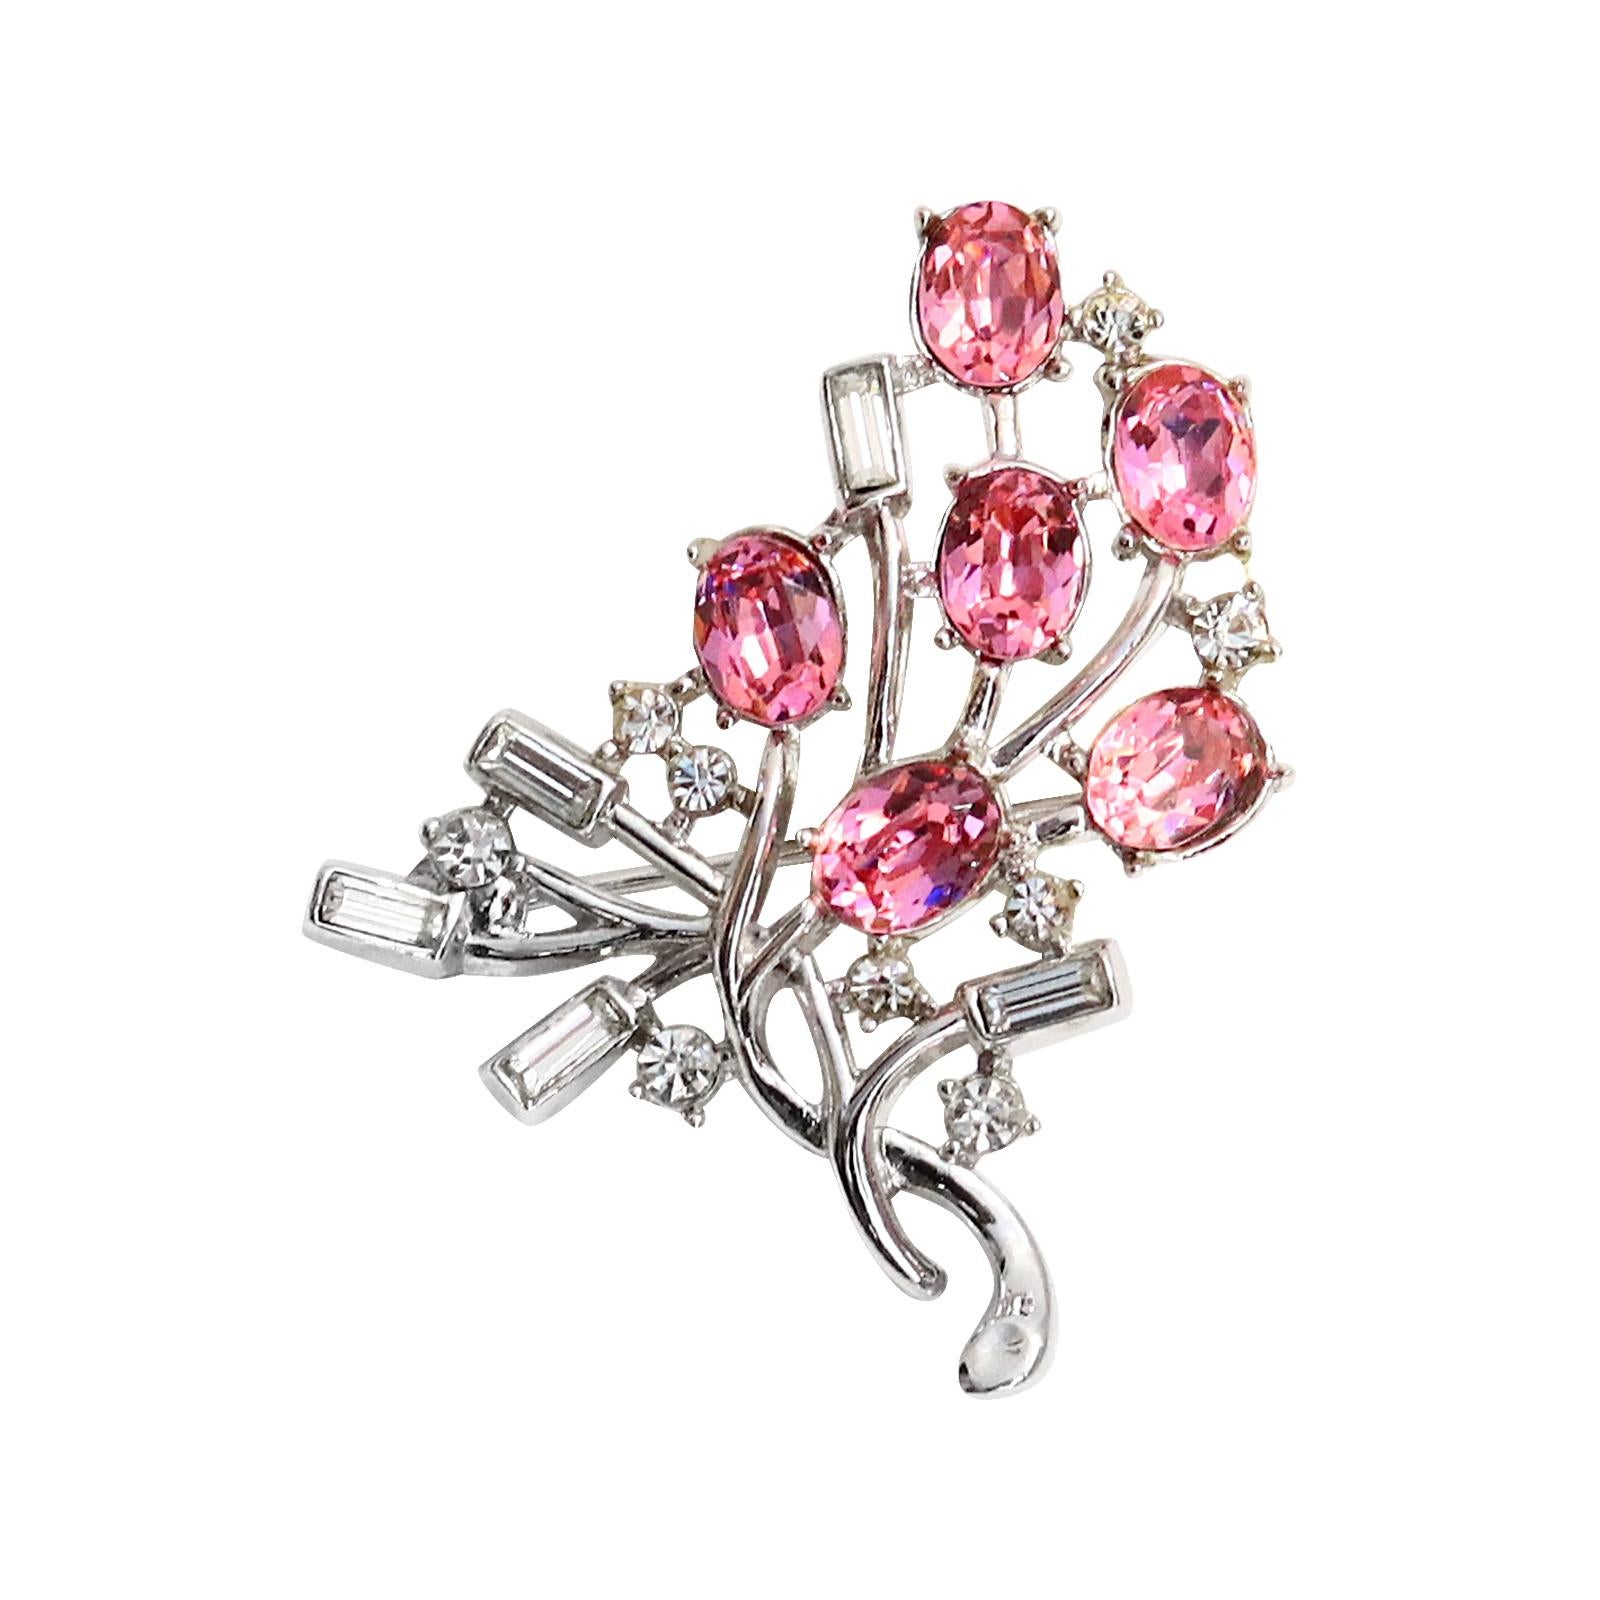 Broche vintage en diamants roses et baguettes de Trifari Circa 1960.  On dirait des fleurs enroulées autour d'une vigne. Les fleurs sont représentées par des pierres roses de forme ovale, entrecoupées de petites pierres rondes, puis les feuilles